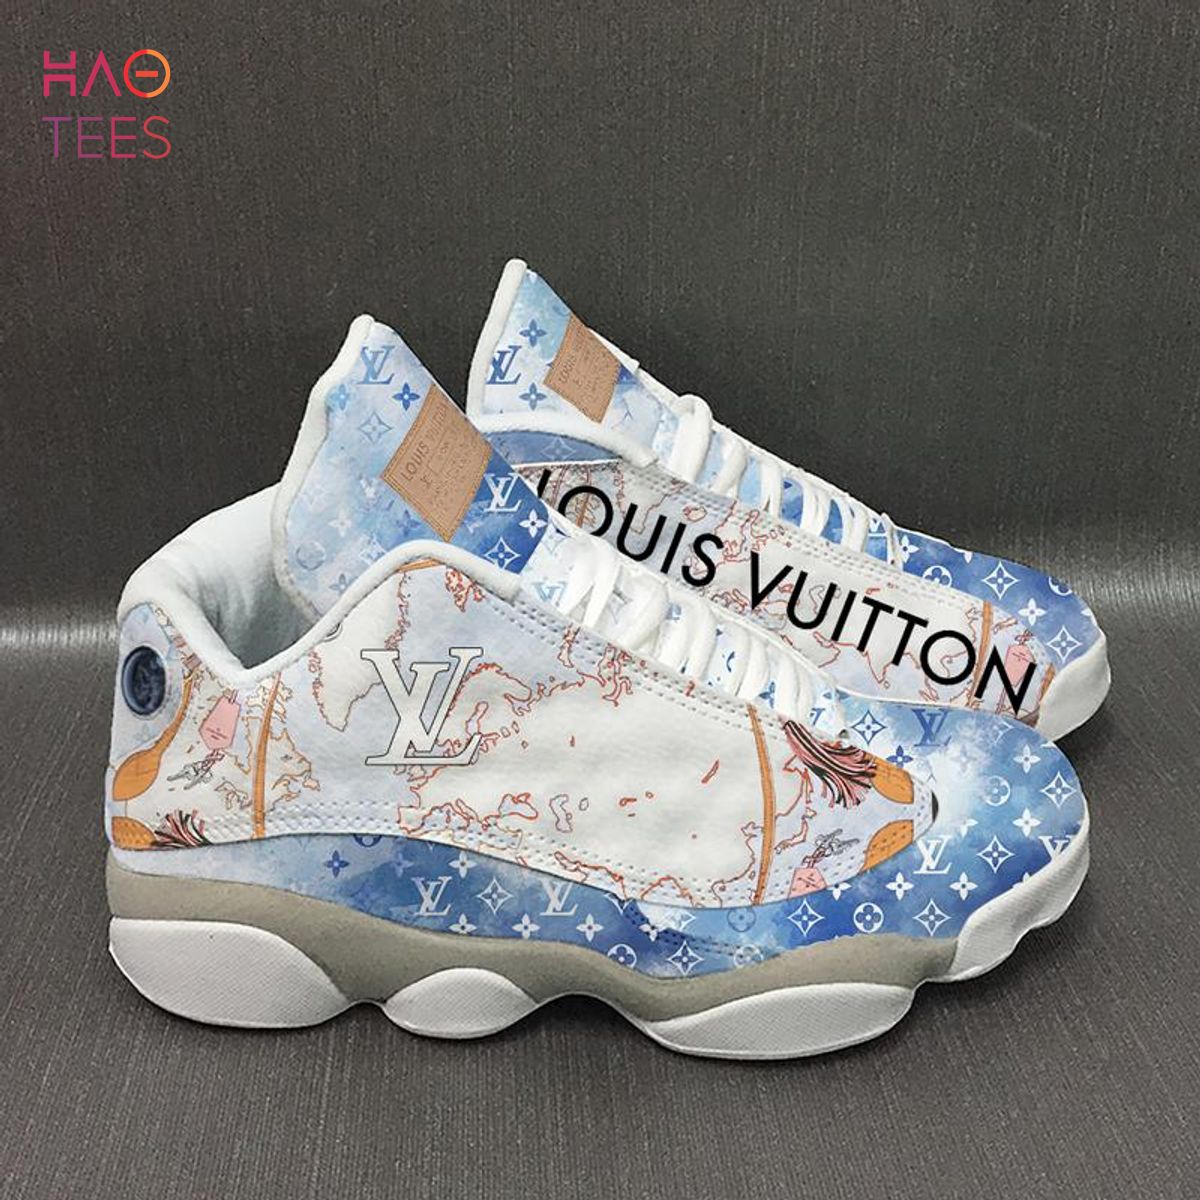 [Available] Air jordan 13 Mix Louis Vuitton Luxury Sneaker, Shoes Version 3